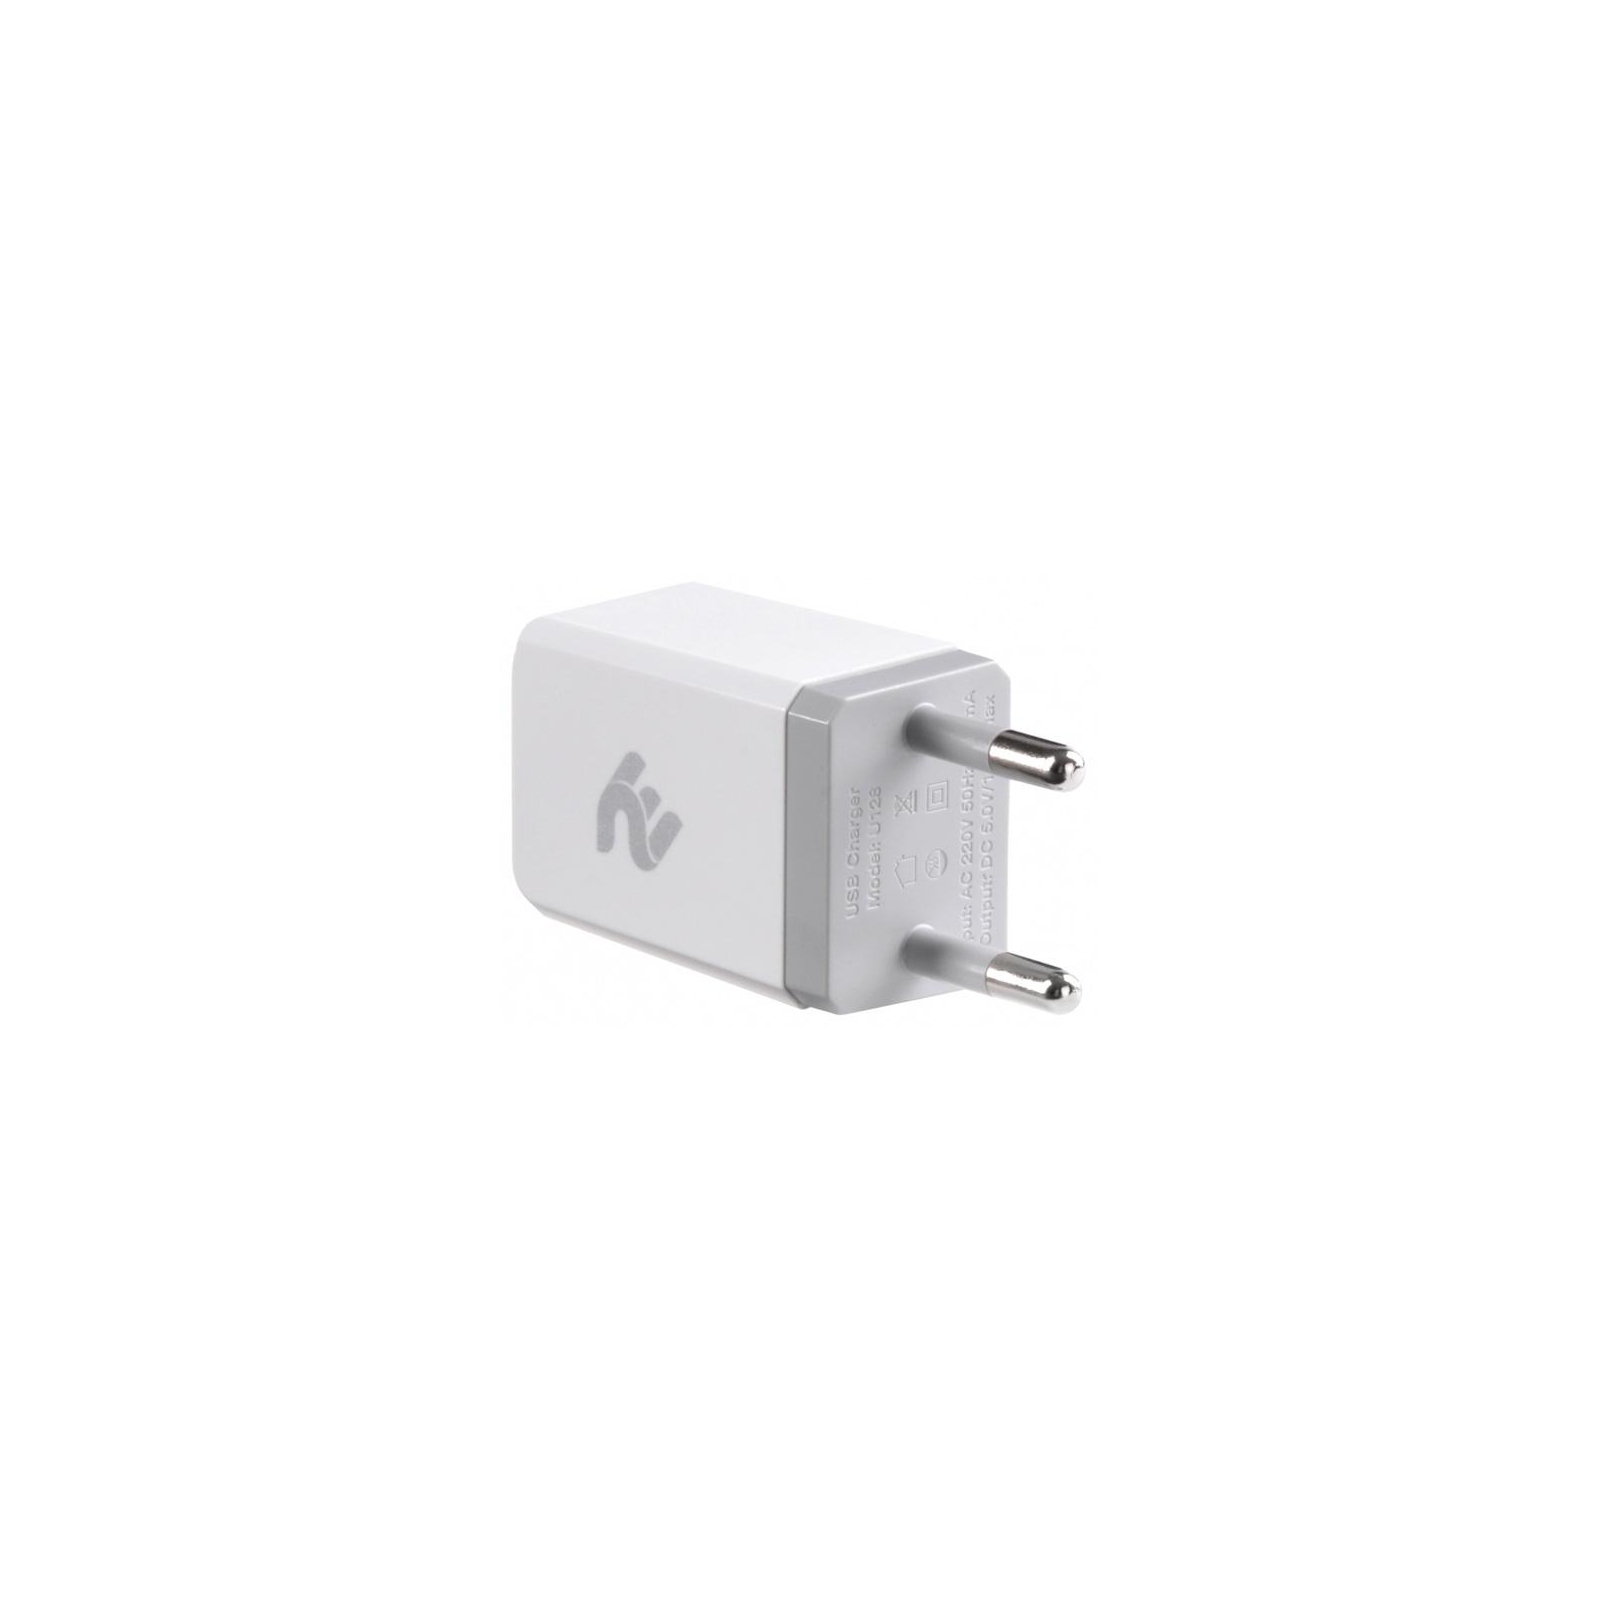 Зарядное устройство 2E USB Wall Charger USB:DC5V/1A, white (2E-WC1USB1A-W) изображение 2